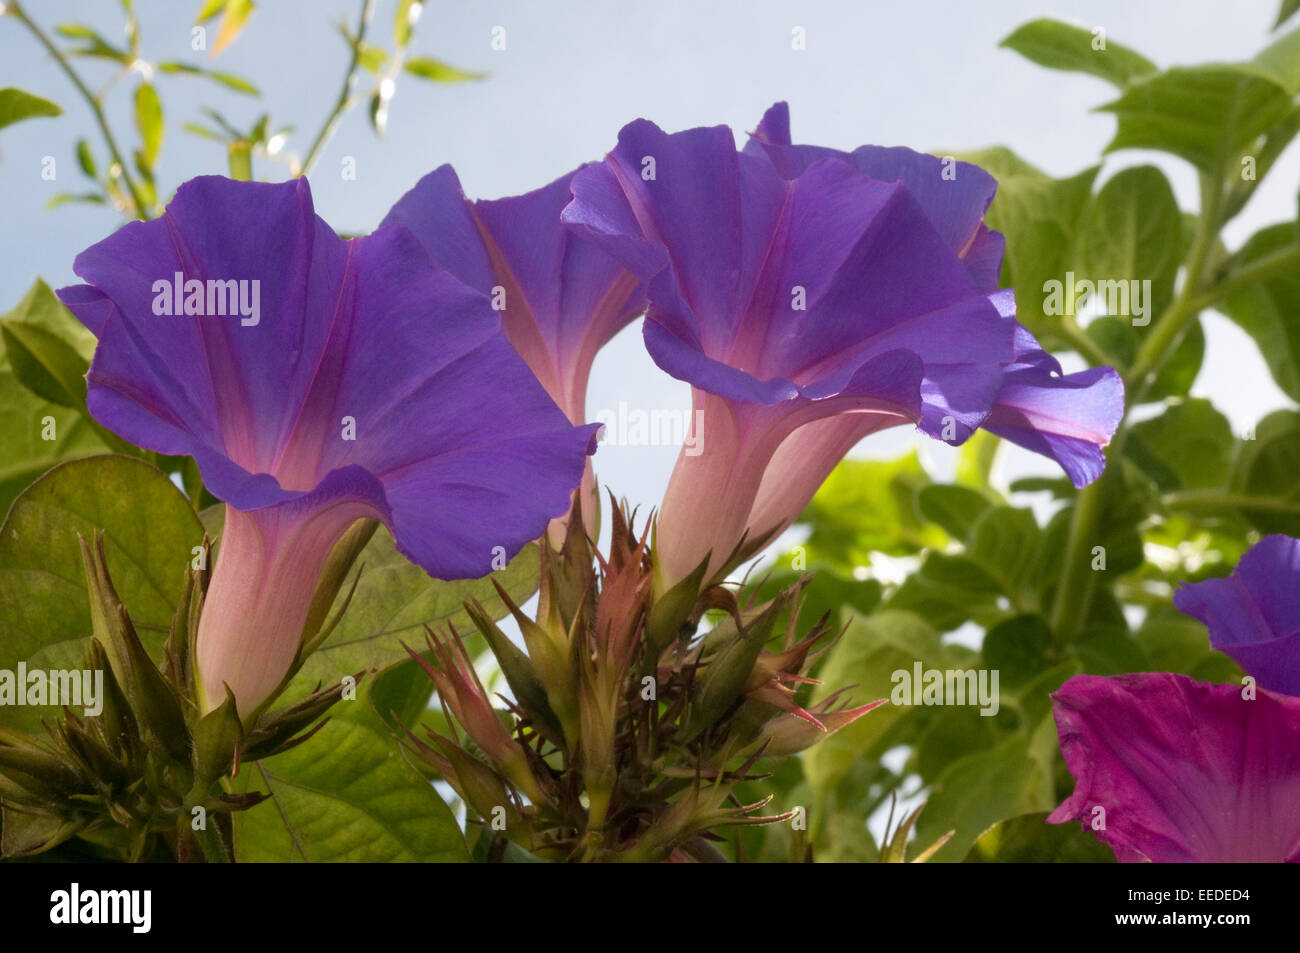 Rosa viola convolvulus. Convolvulus /kənˈvɒlvjuːləs/ è un genere di circa 200 a 250 specie di piante da fiore Foto Stock